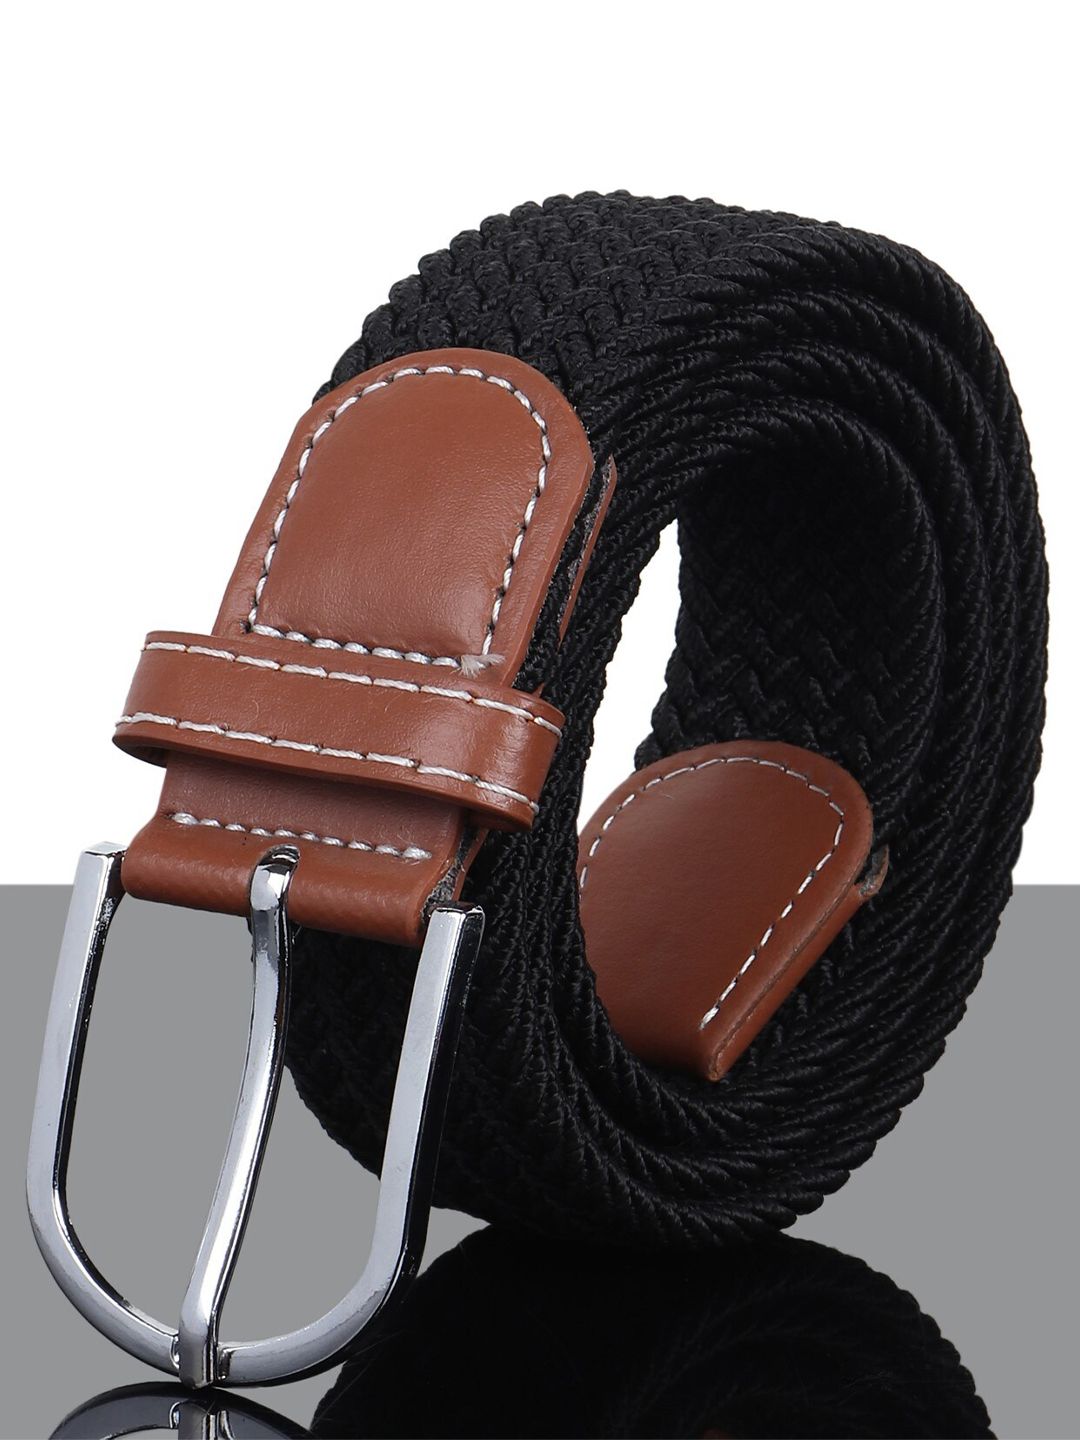 Kastner Unisex Black Woven Design Stretchable Belt Price in India